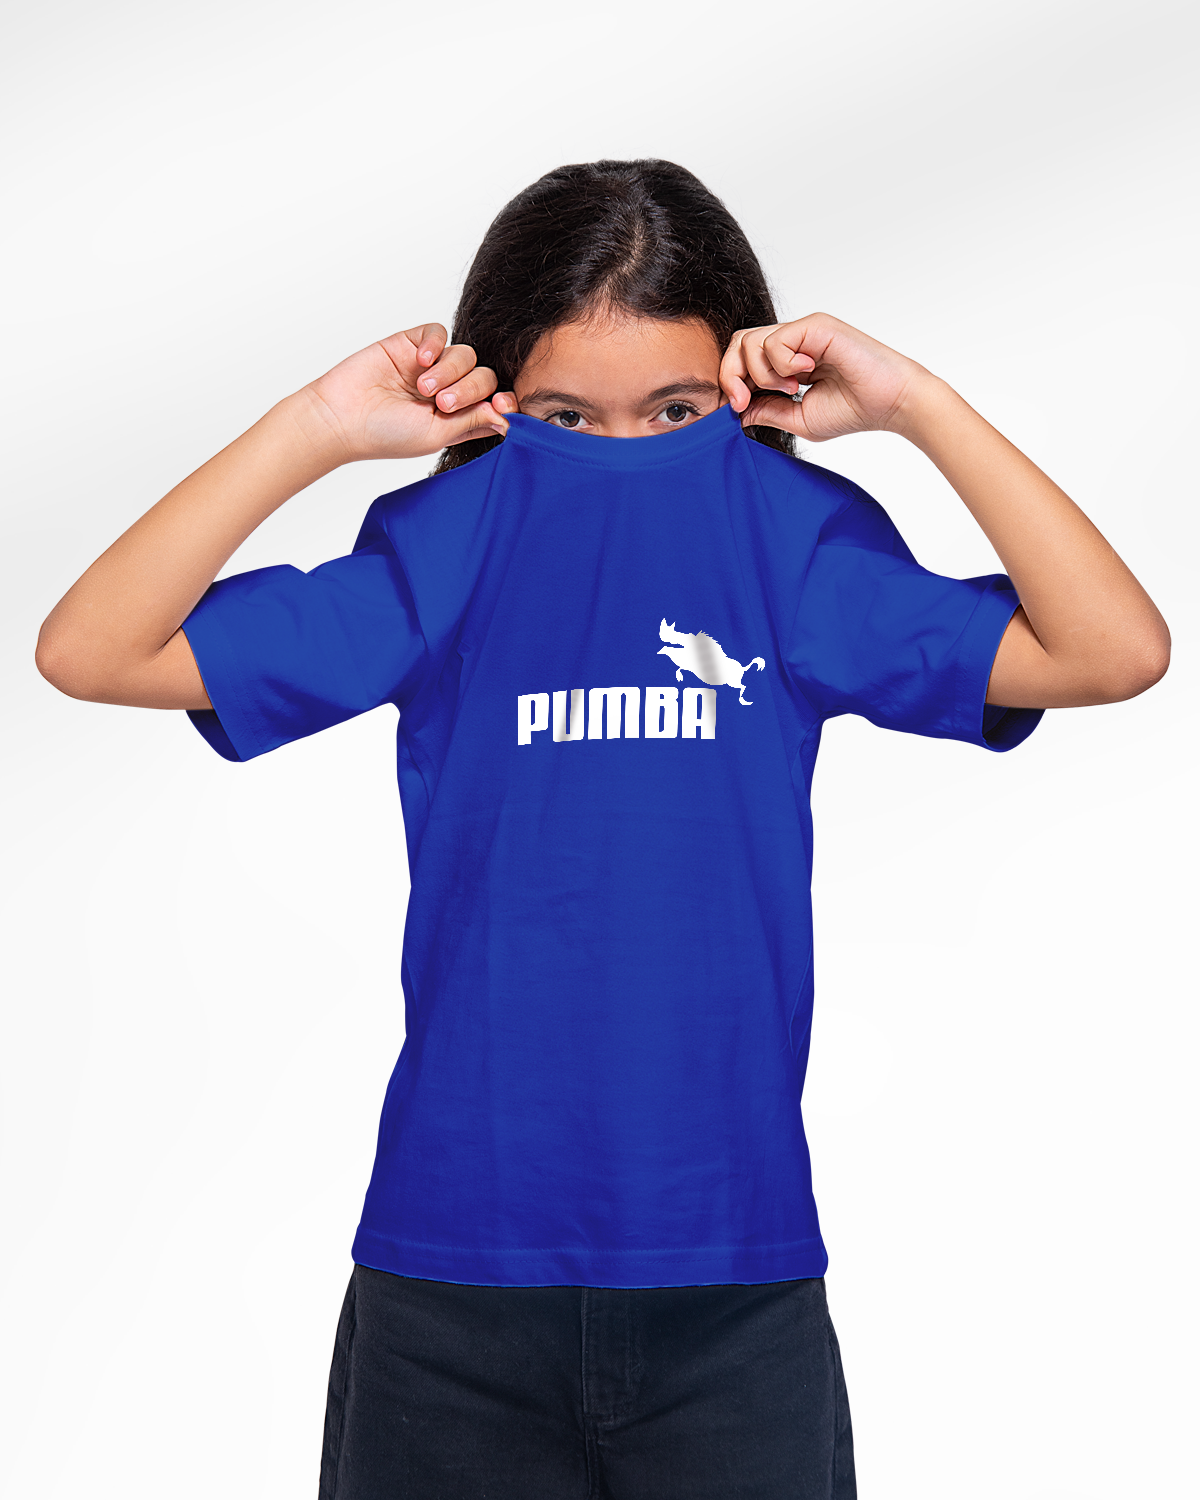 T-shirt For Girls (Pumpa)